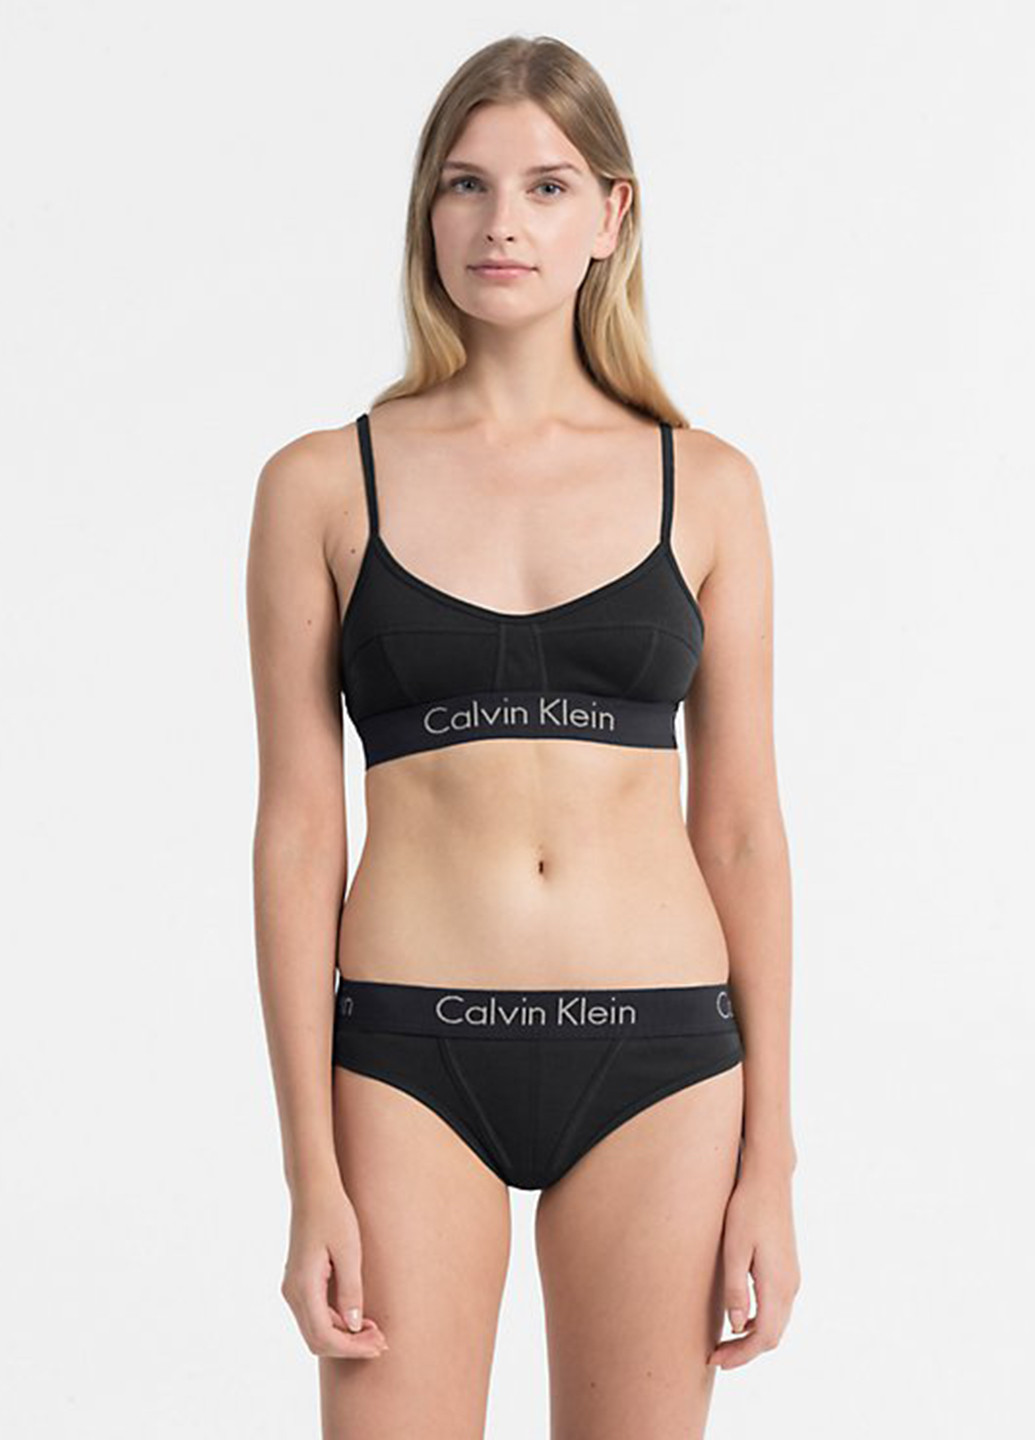 Чёрный бюстгальтер Calvin Klein без косточек